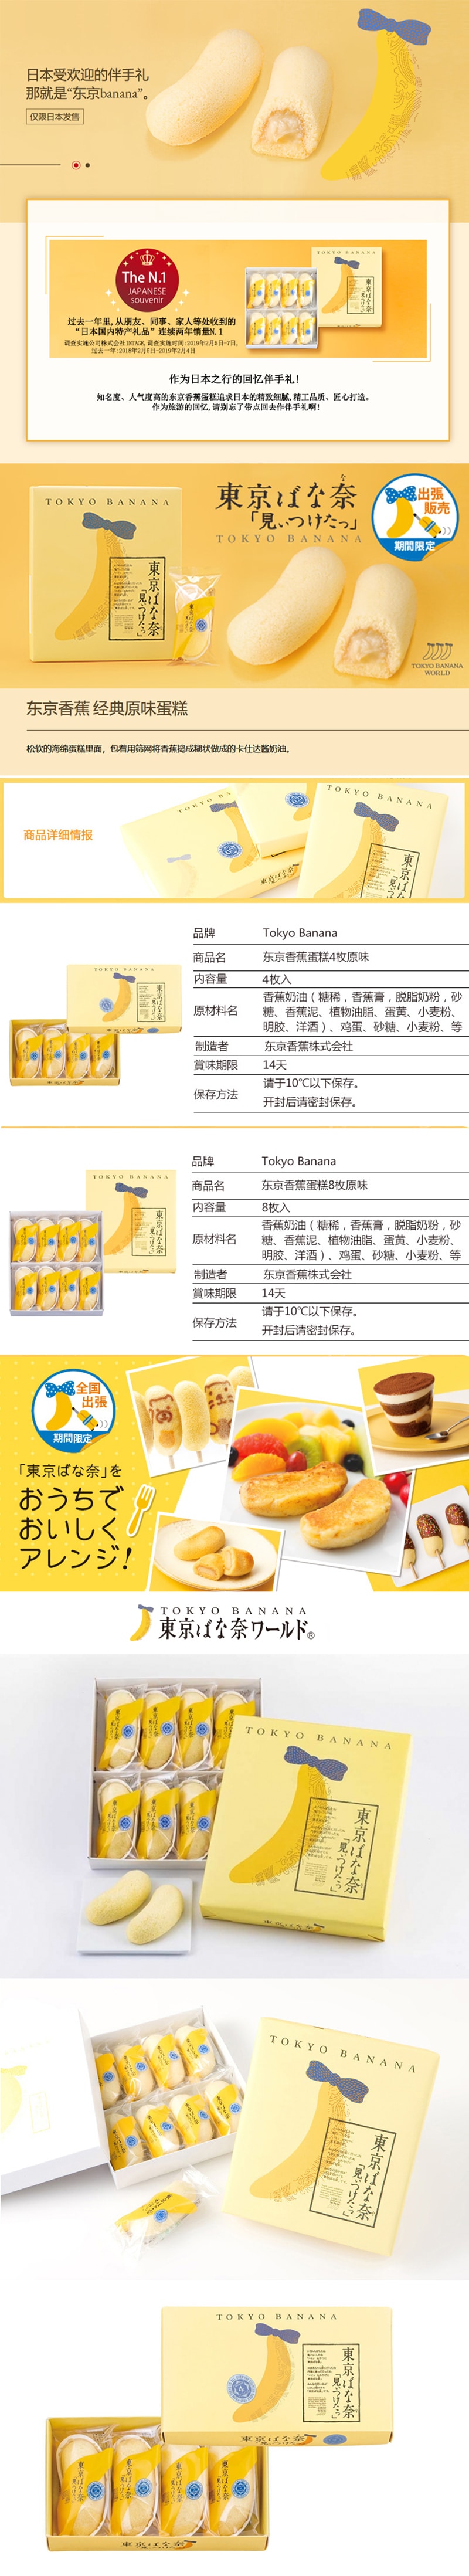 【日本直邮】DHL直邮 3-5天到 日本伴手礼常年第一位 东京香蕉TOKYO BANANA 原味 8个装